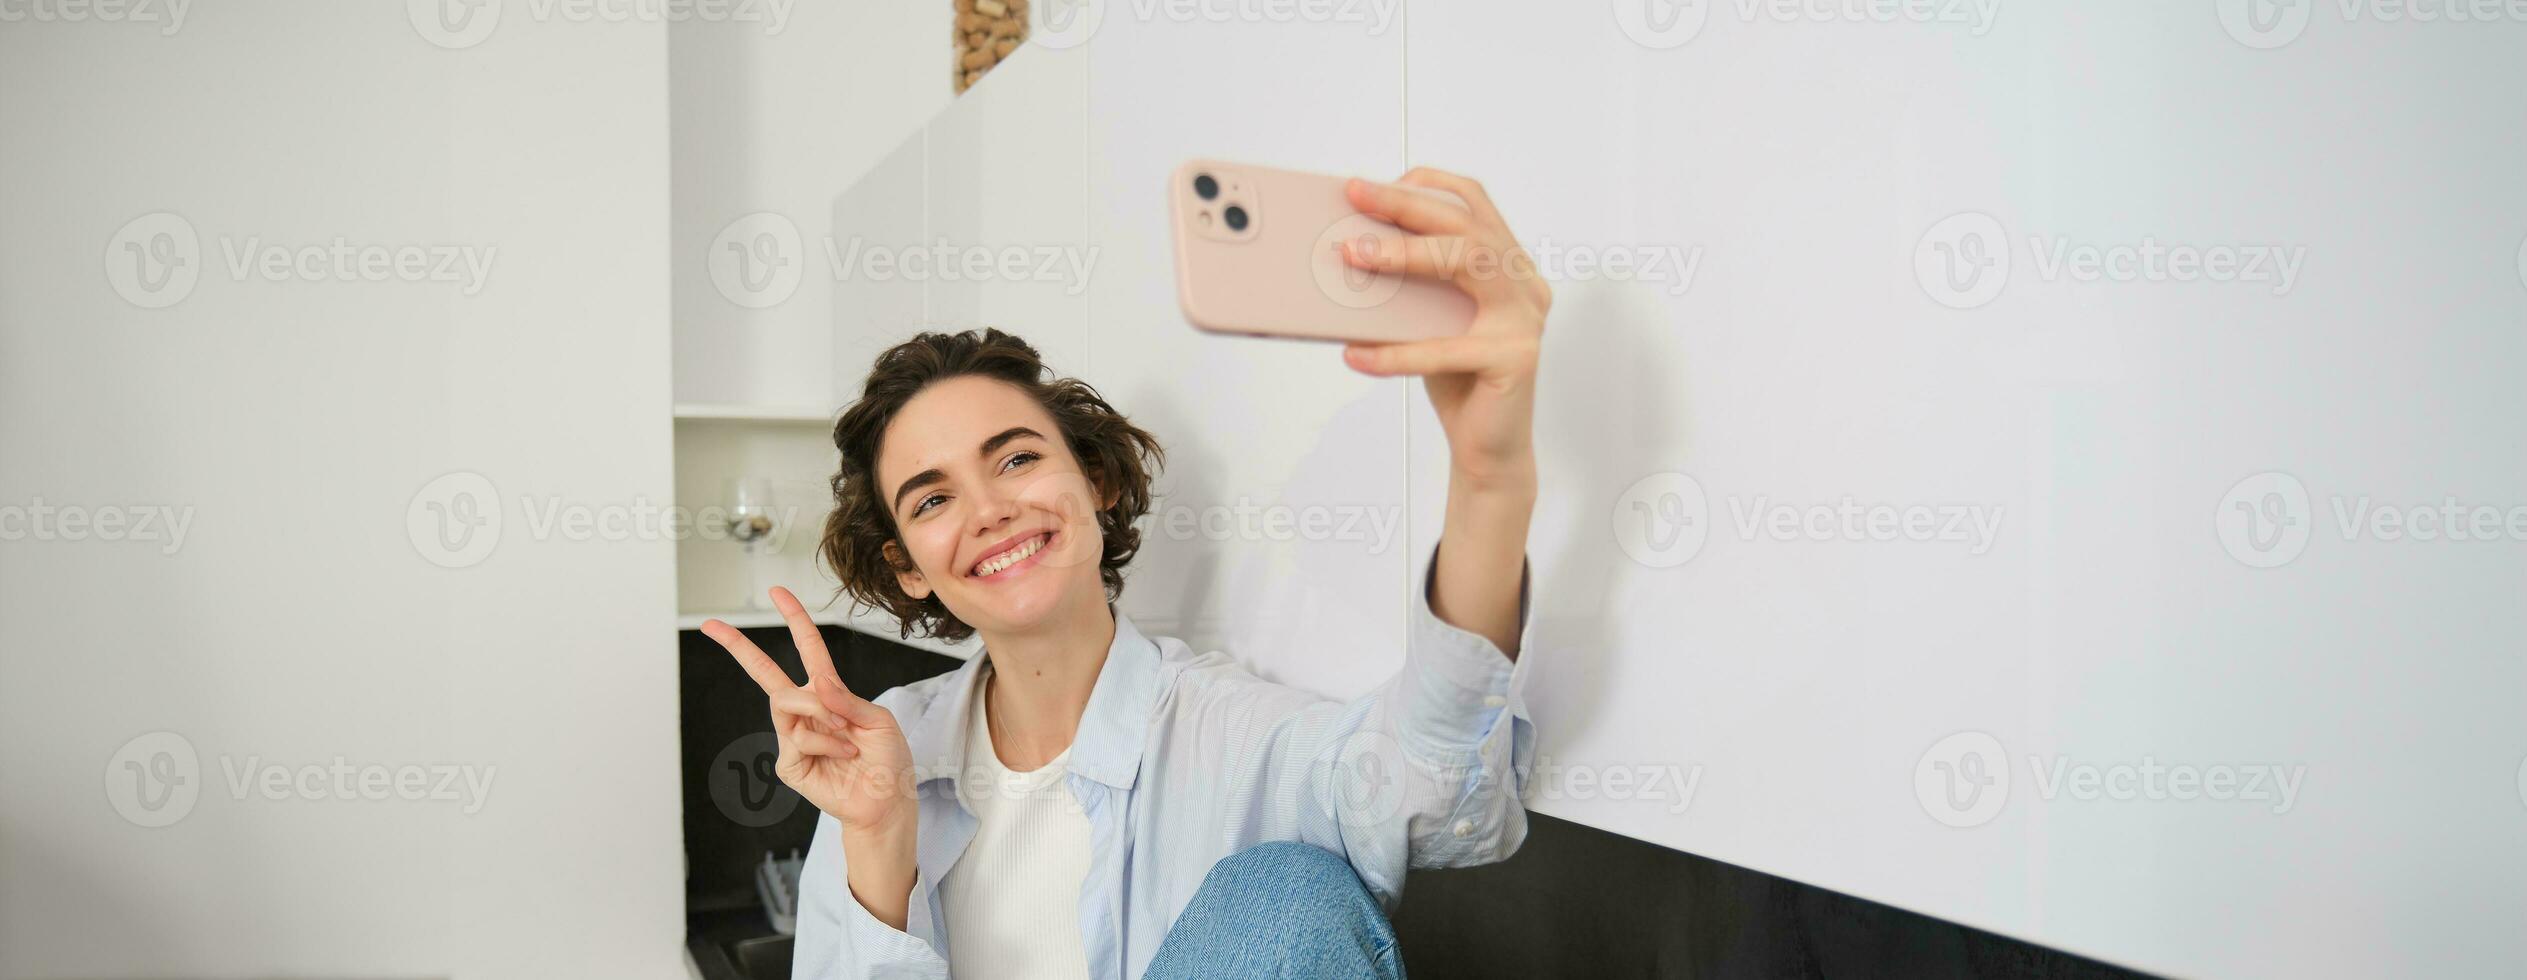 ritratto di bellissimo brunetta ragazza, prende autoscatto su smartphone nel sua cucina, in posa per foto su mobile Telefono